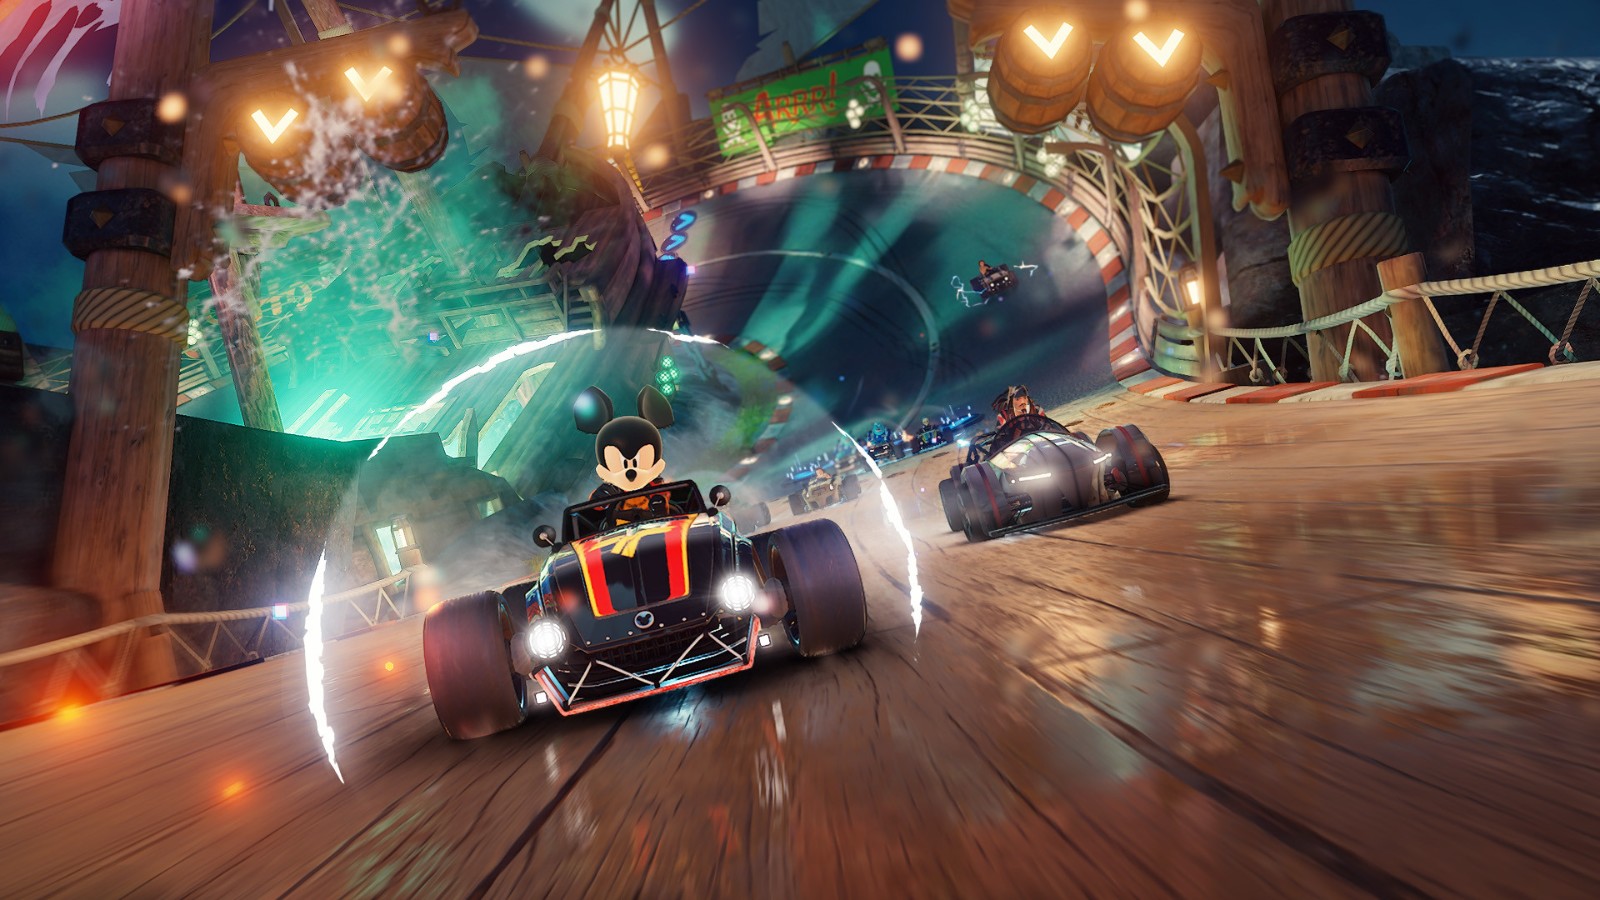 免費賽車遊戲《迪士尼無限飛車》發布上市預告